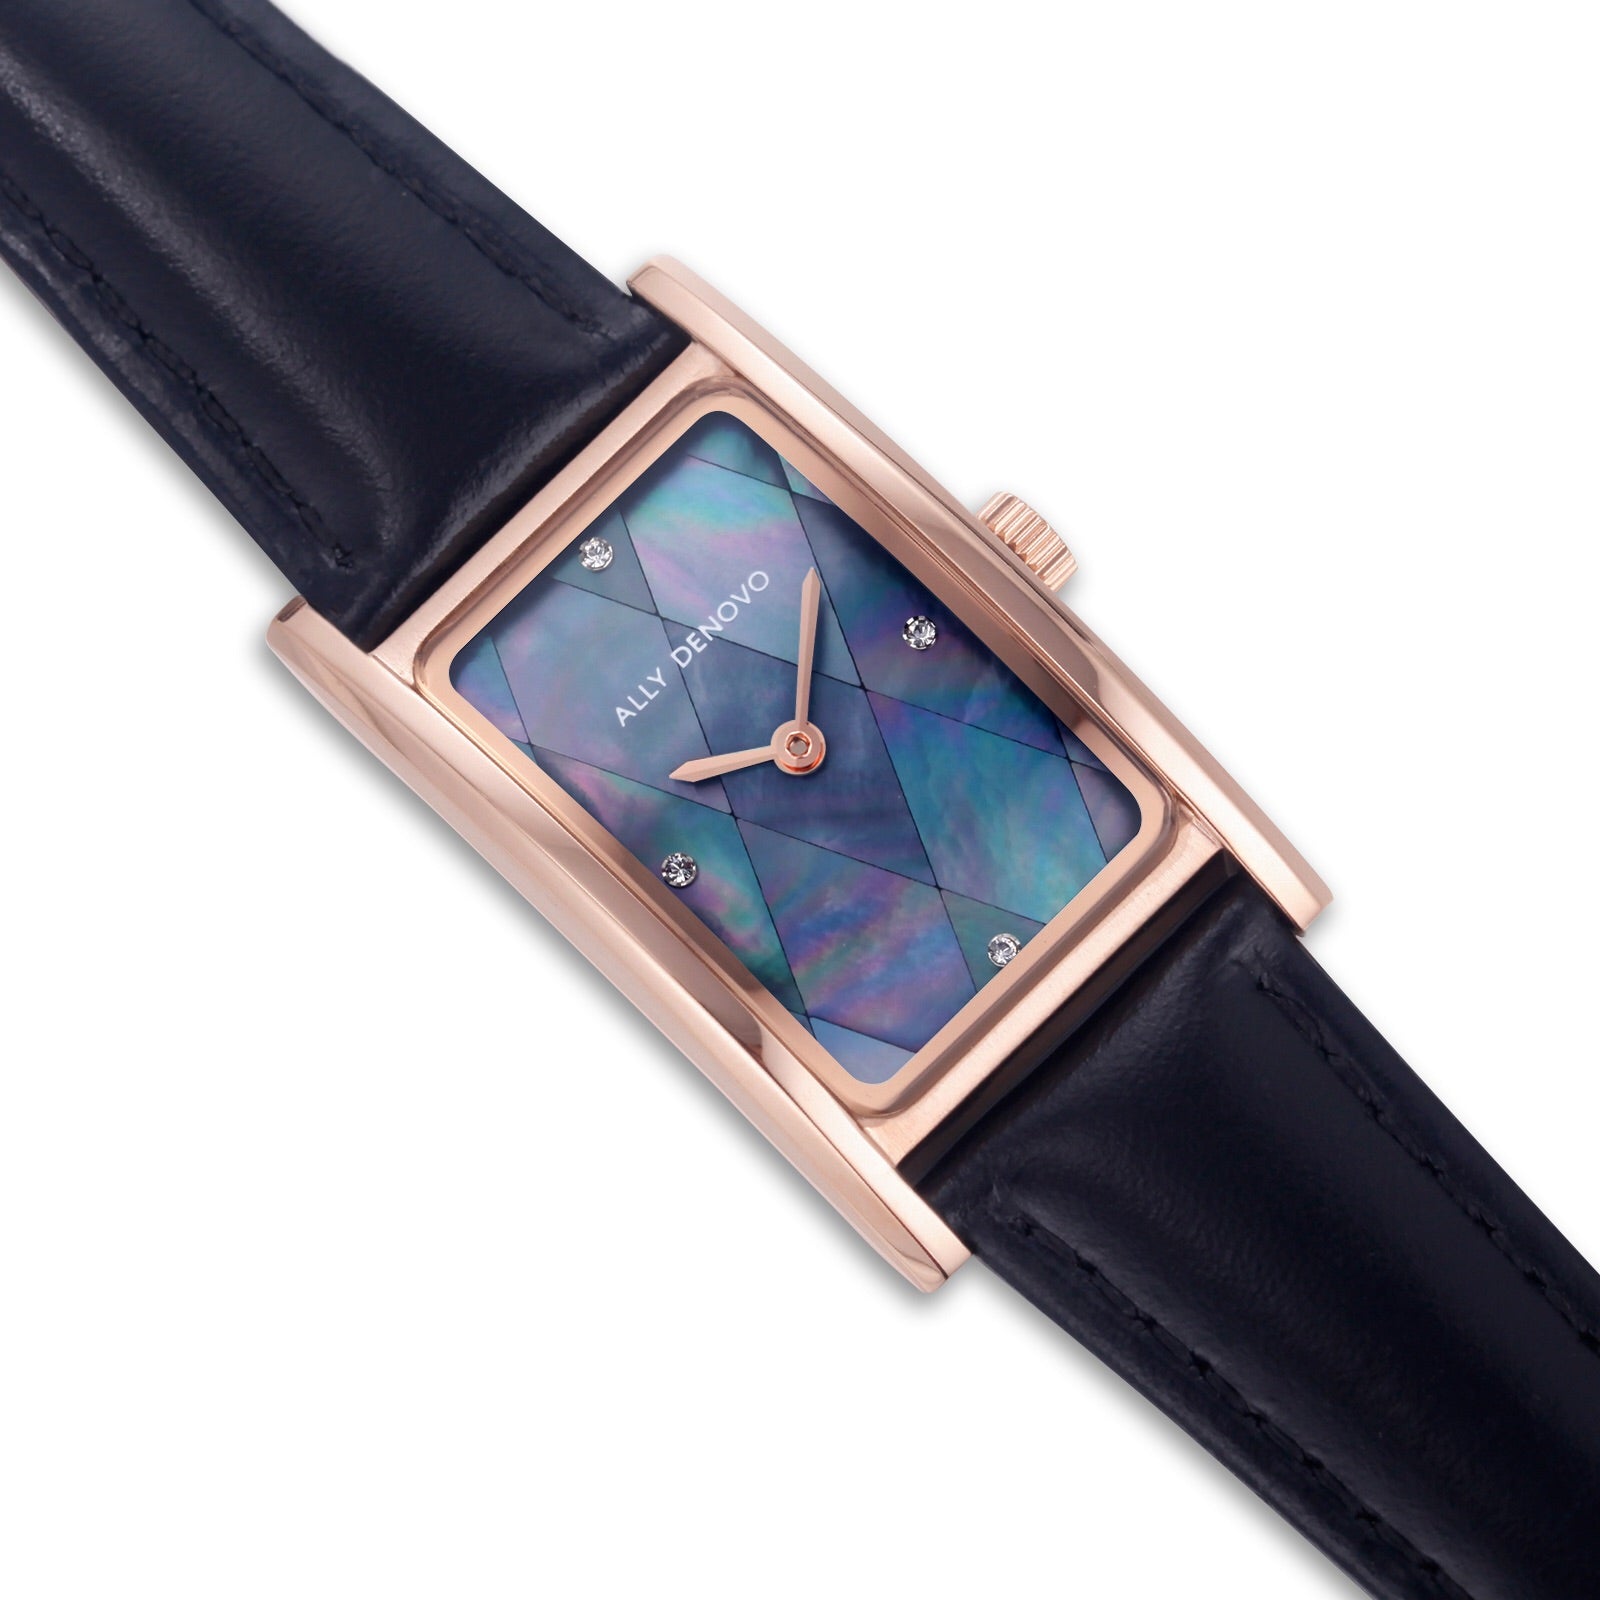 【限量頂級方形琉璃錶鍊禮盒】藍菱玫瑰金框黑色手錶 限時贈送 銀製手鍊